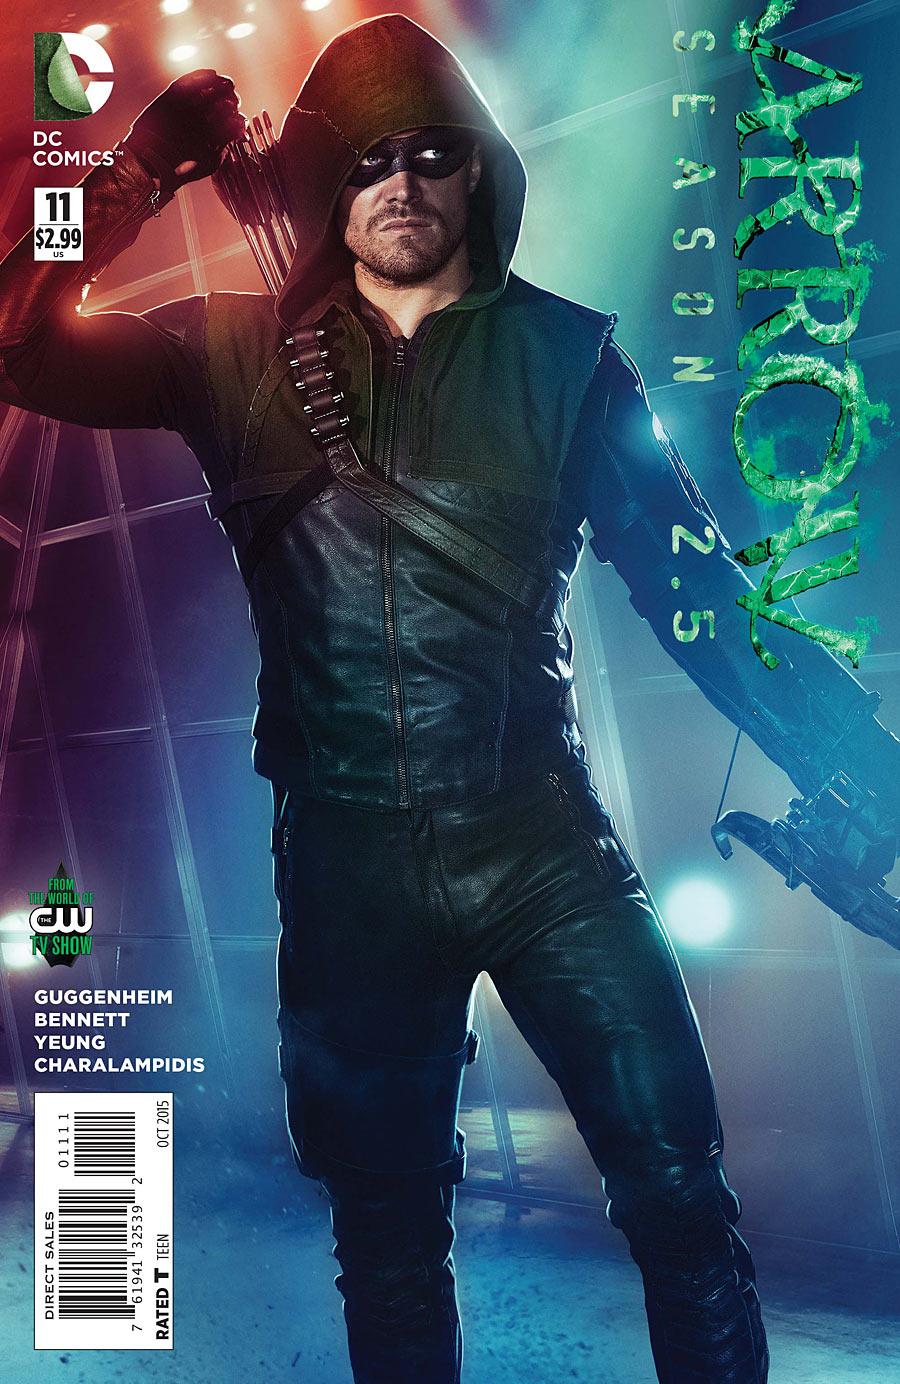 Arrow: Season 2.5 Vol. 1 #11